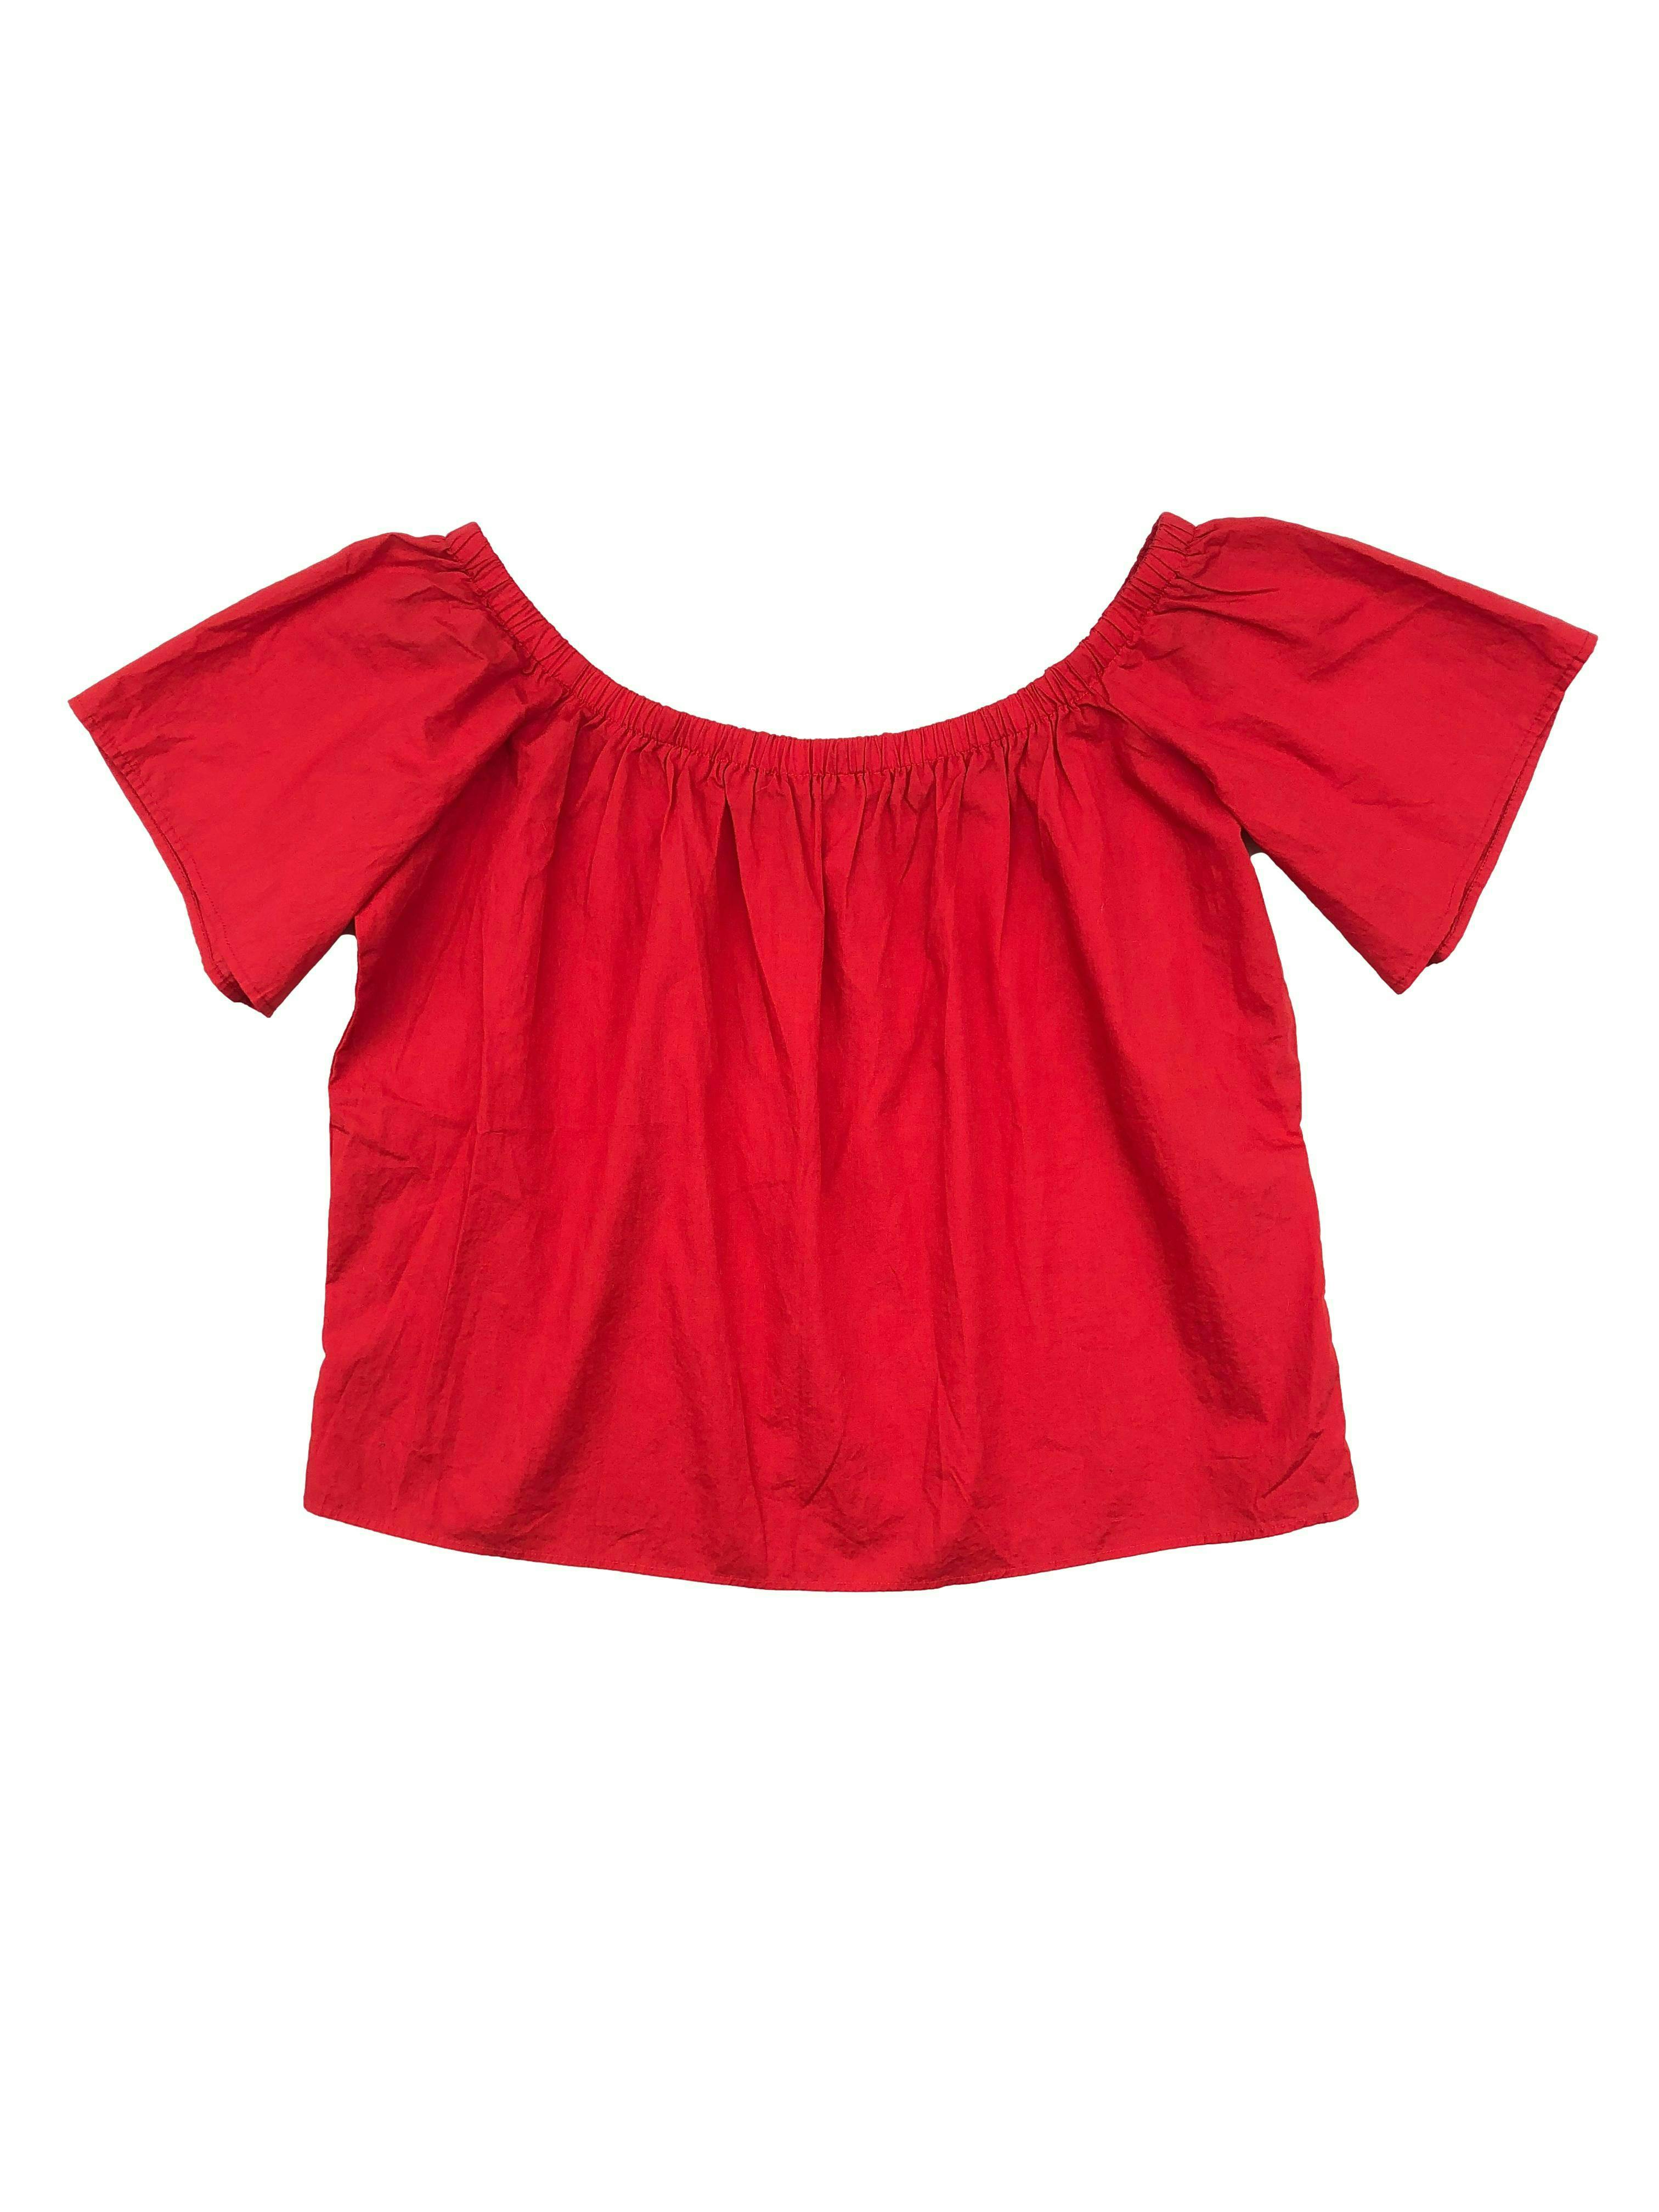 Blusa H&M roja off shoulder, tela tipo algodón camisa. Busto 100cm Largo  41cm. Nueva